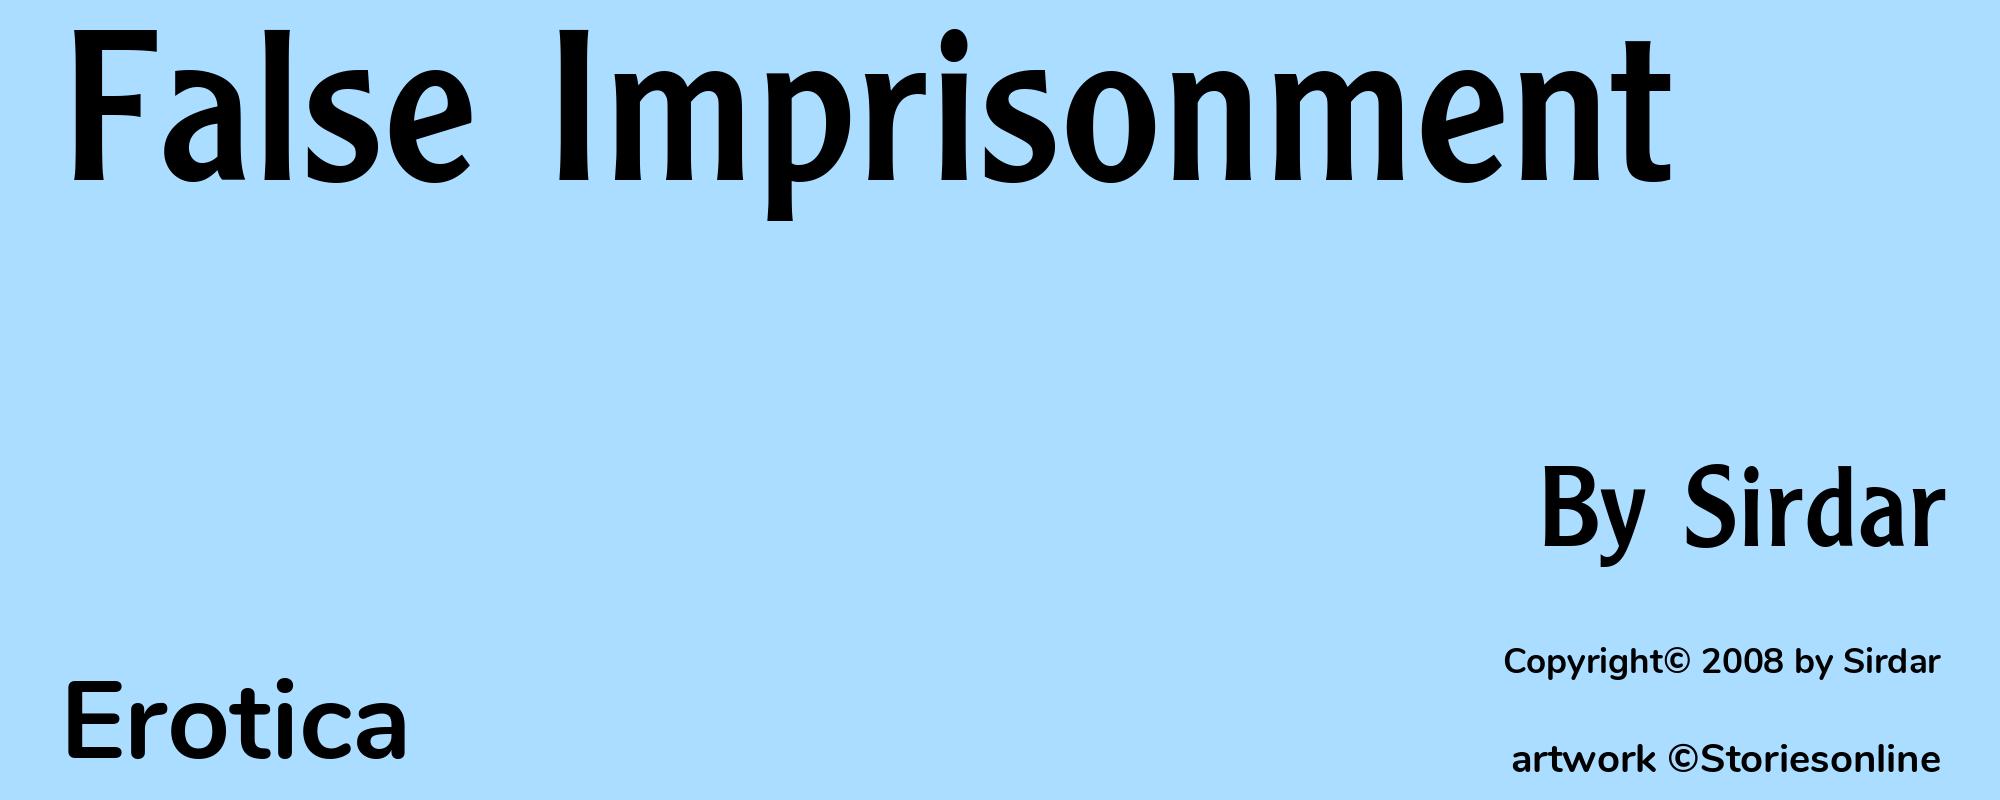 False Imprisonment - Cover